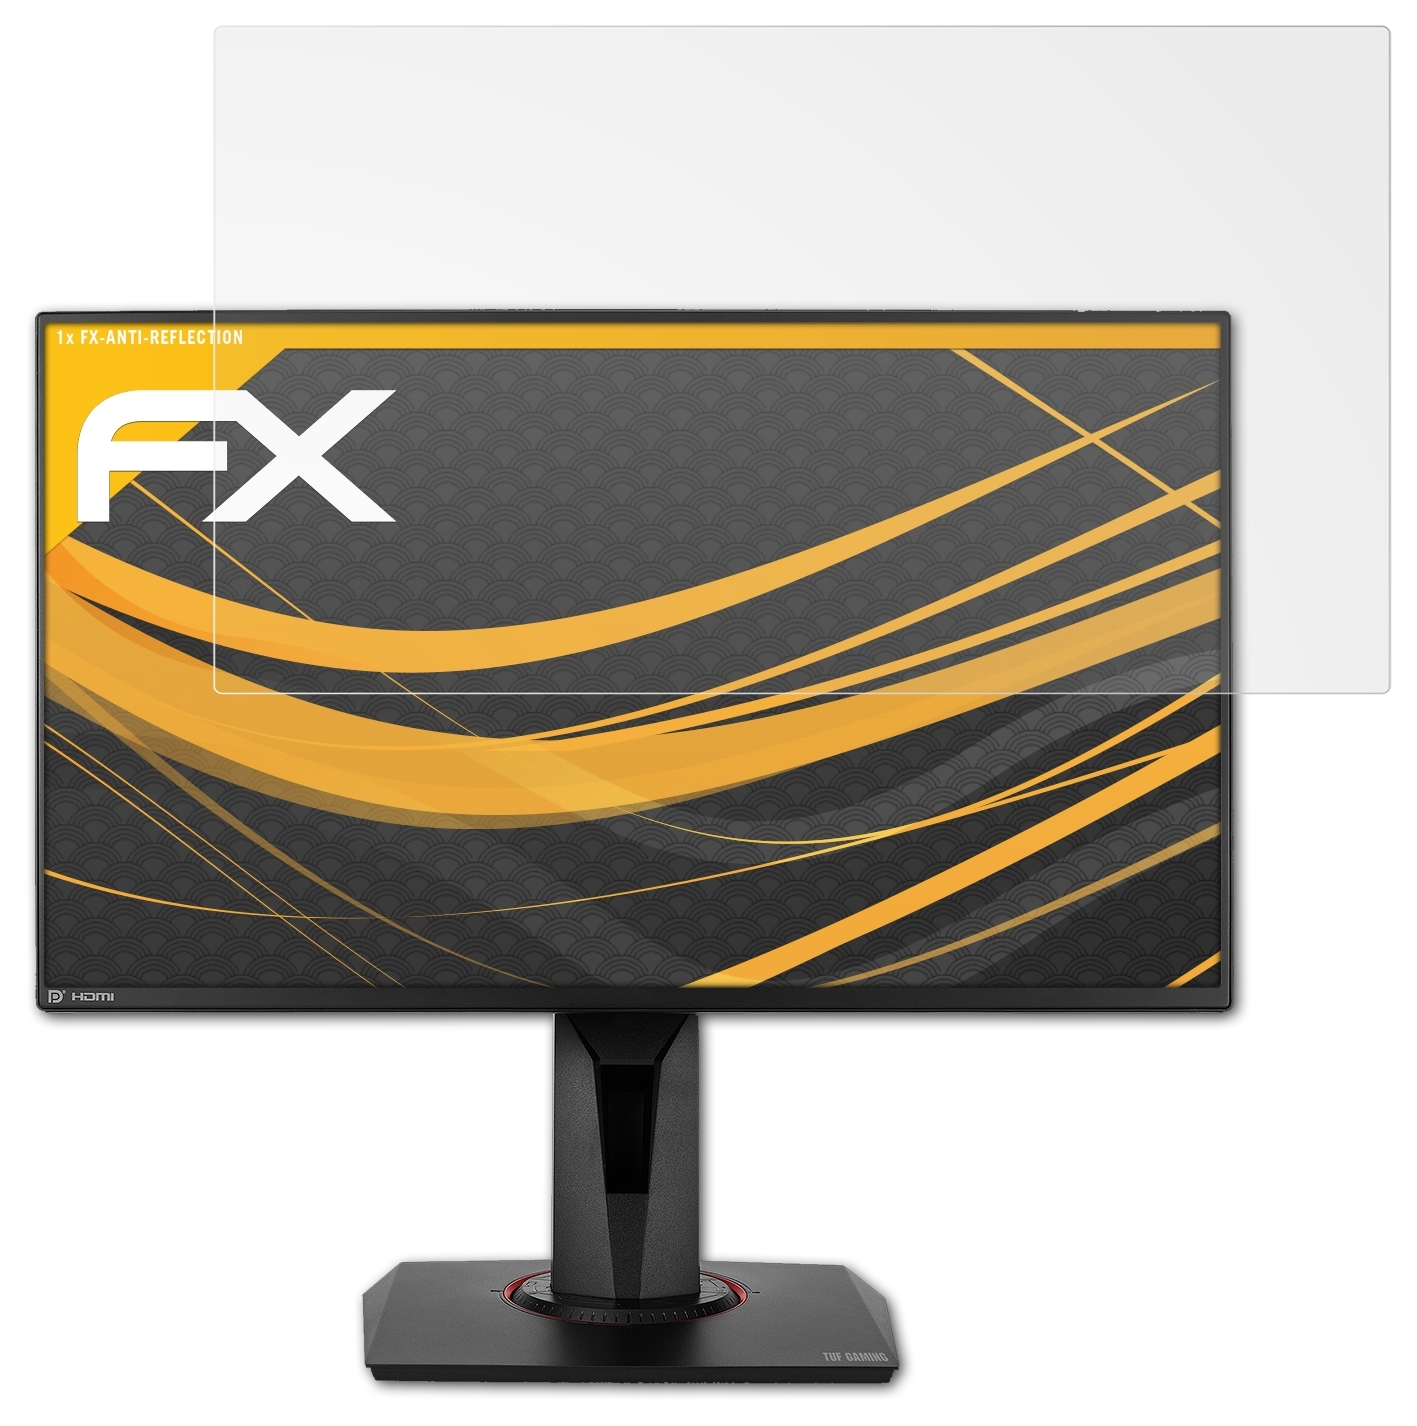 Gaming FX-Antireflex TUF Asus ATFOLIX Displayschutz(für VG258QM)